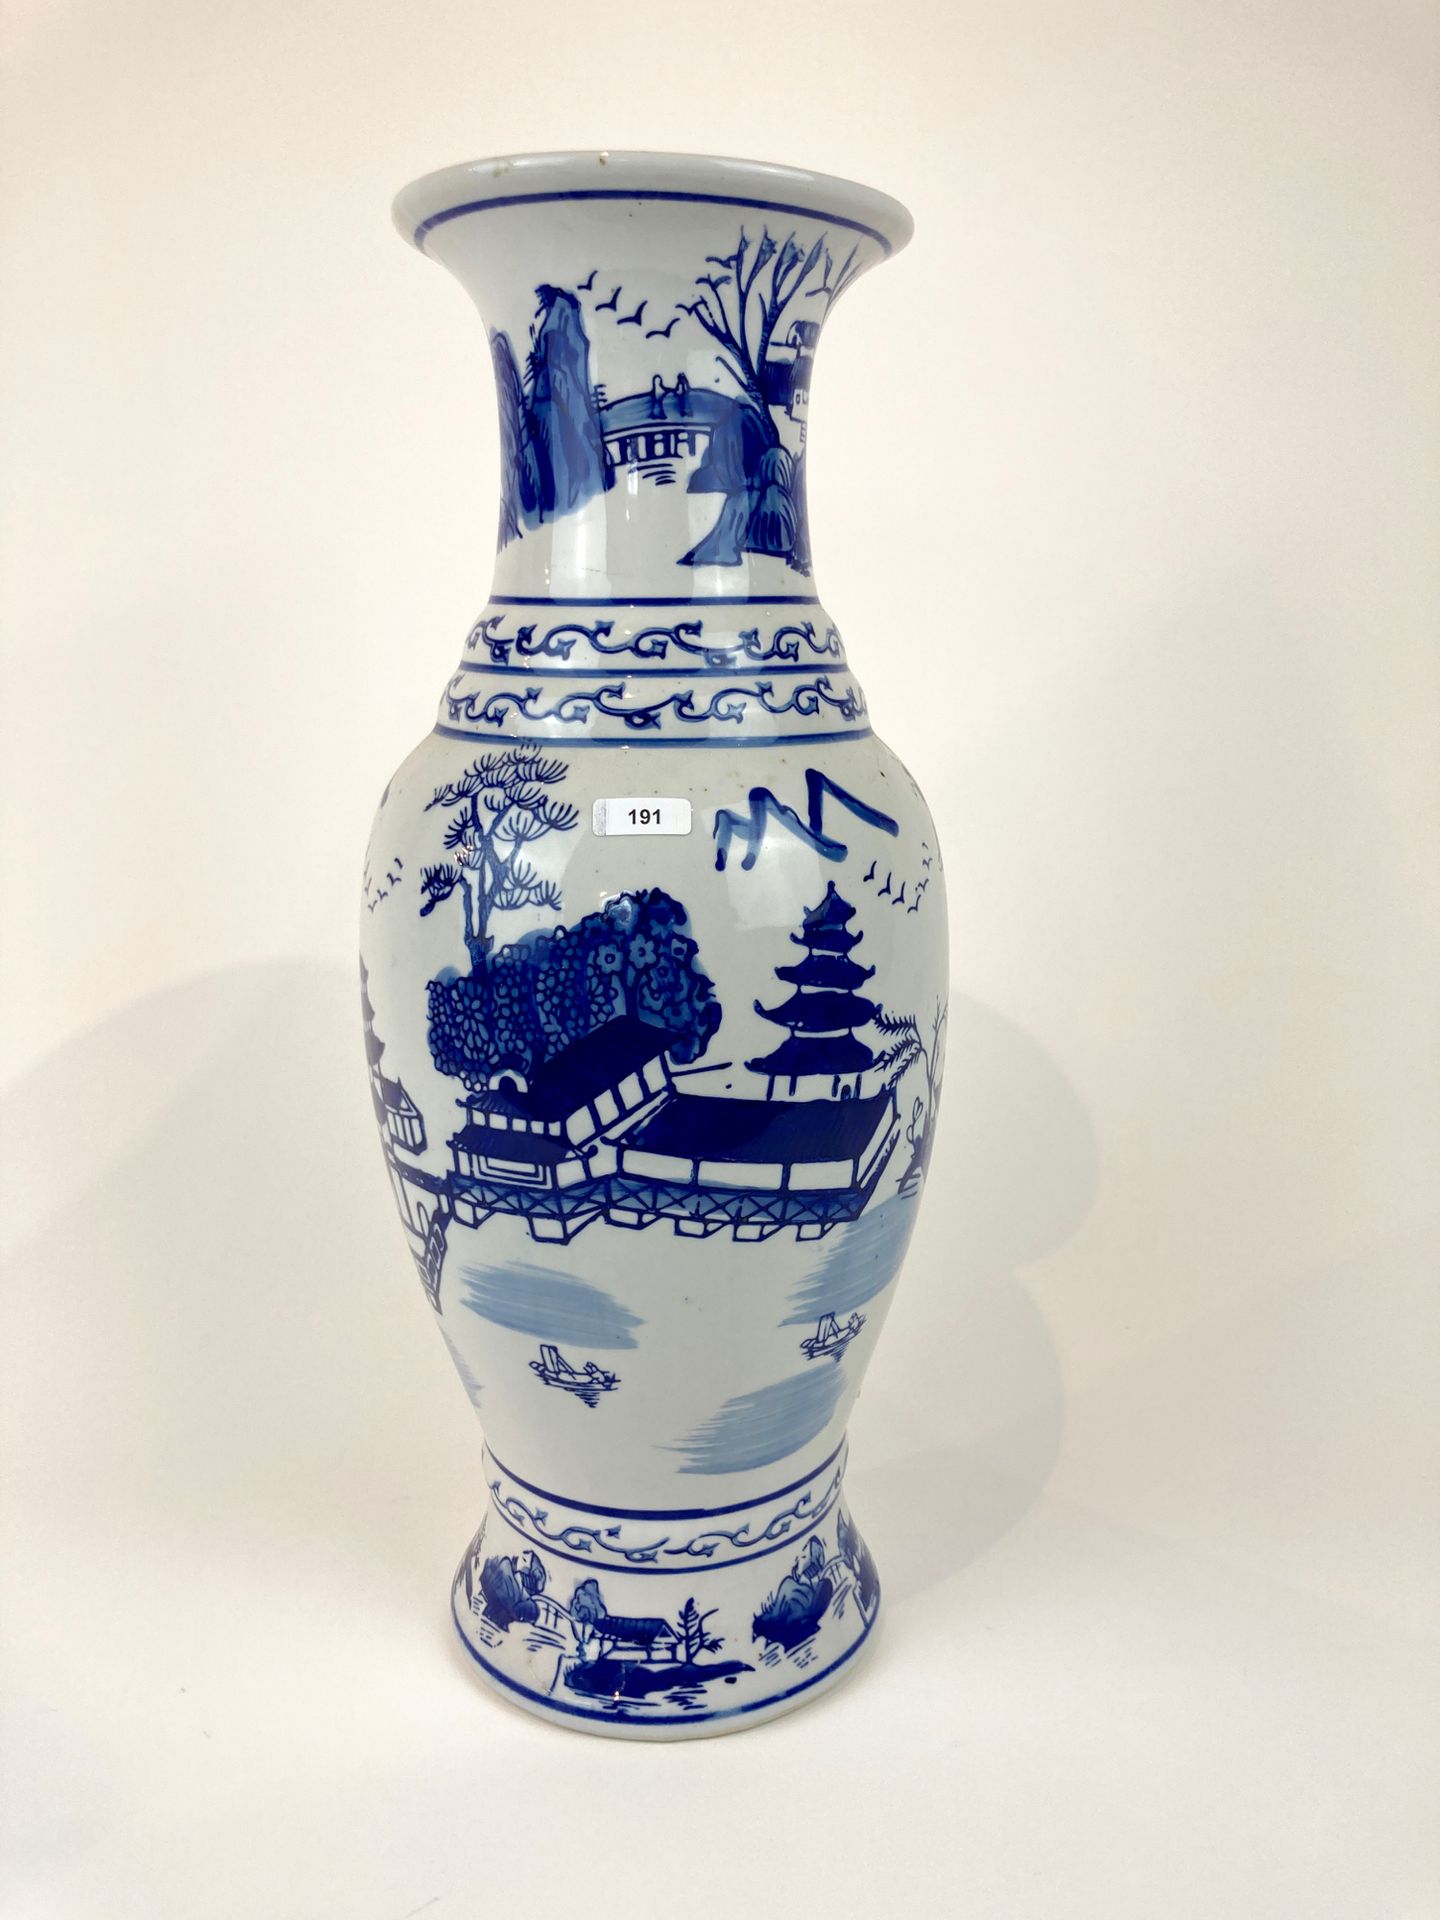 CHINE 蓝白相间的活泼湖景装饰花瓶，20世纪末，瓷器，高。44厘米。